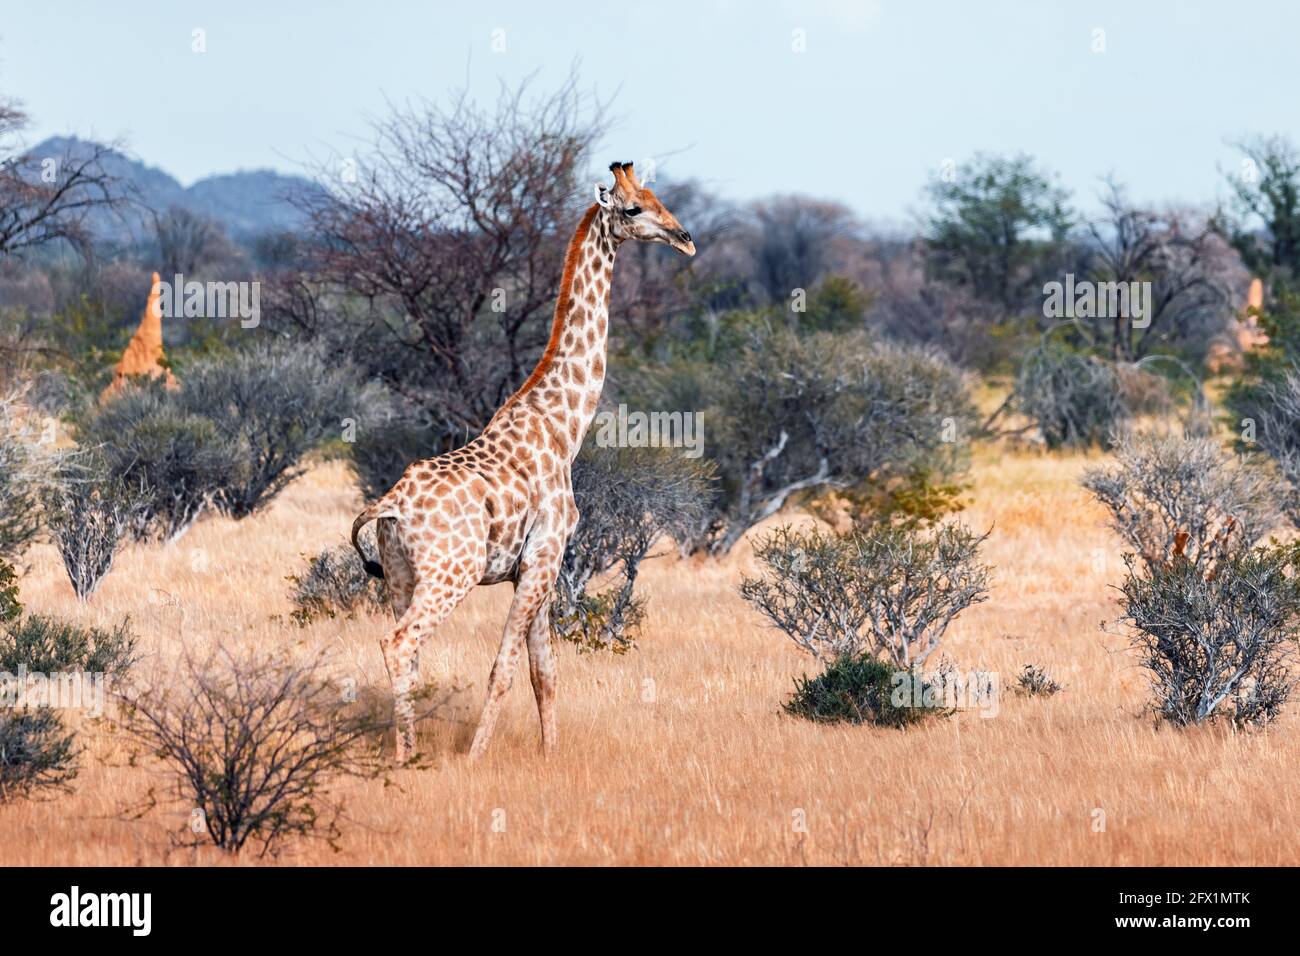 Junge Giraffe bei einem Spaziergang im afrikanischen Busch im Etosha National Park, Namibia, Afrika. Wildtierfotografie Stockfoto